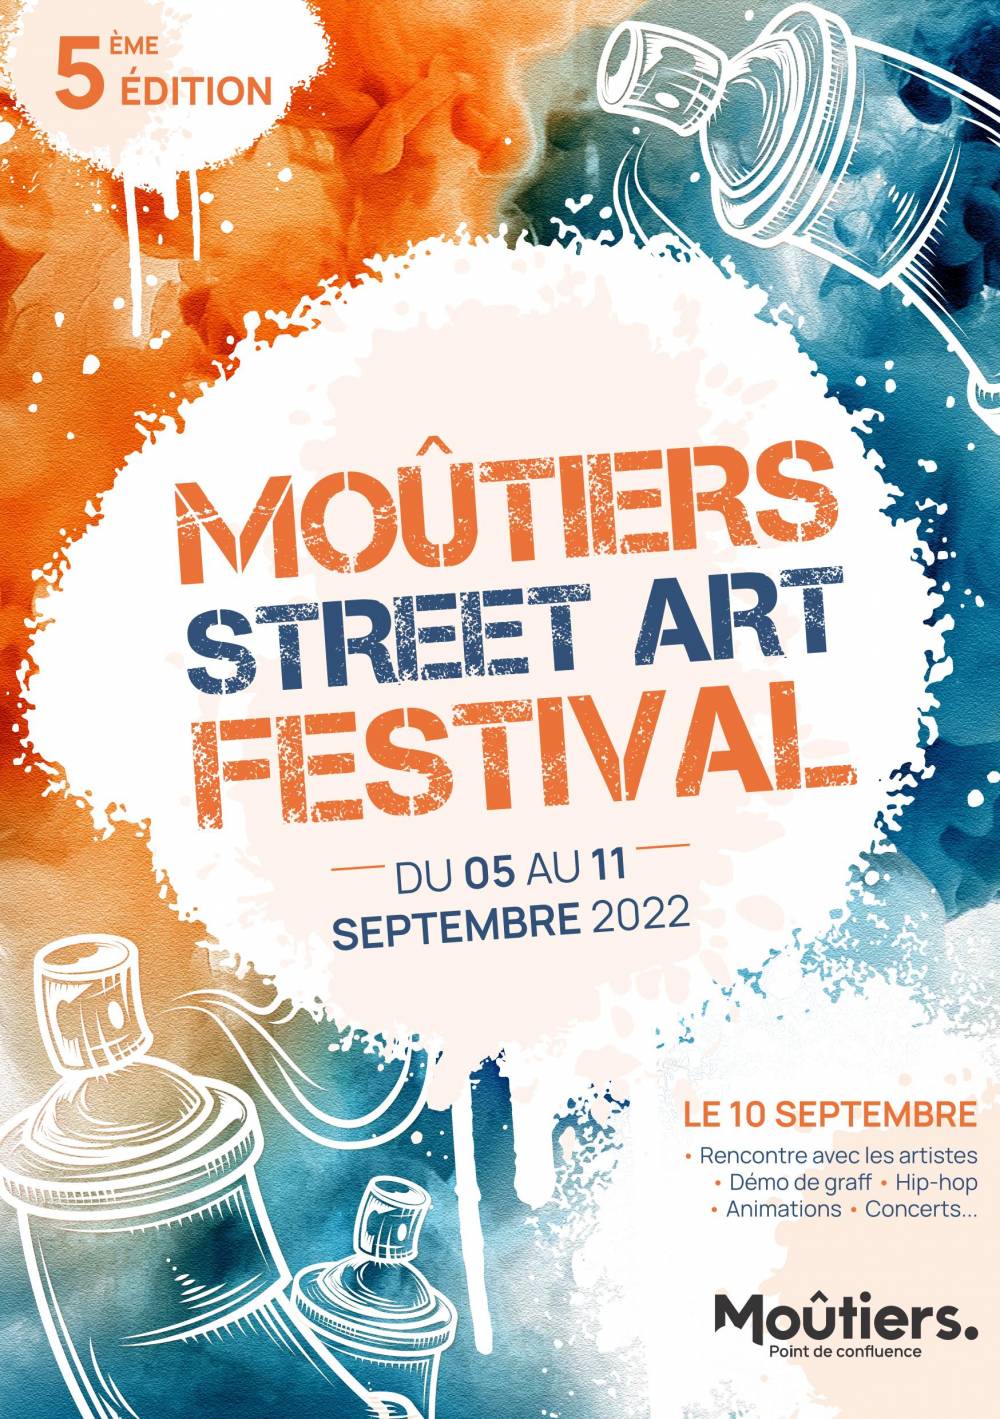 Deuz DU 5 SEPTEMBRE AU 11 SEPTEMBRE // FESTIVAL STREET ART // MOUTIERS